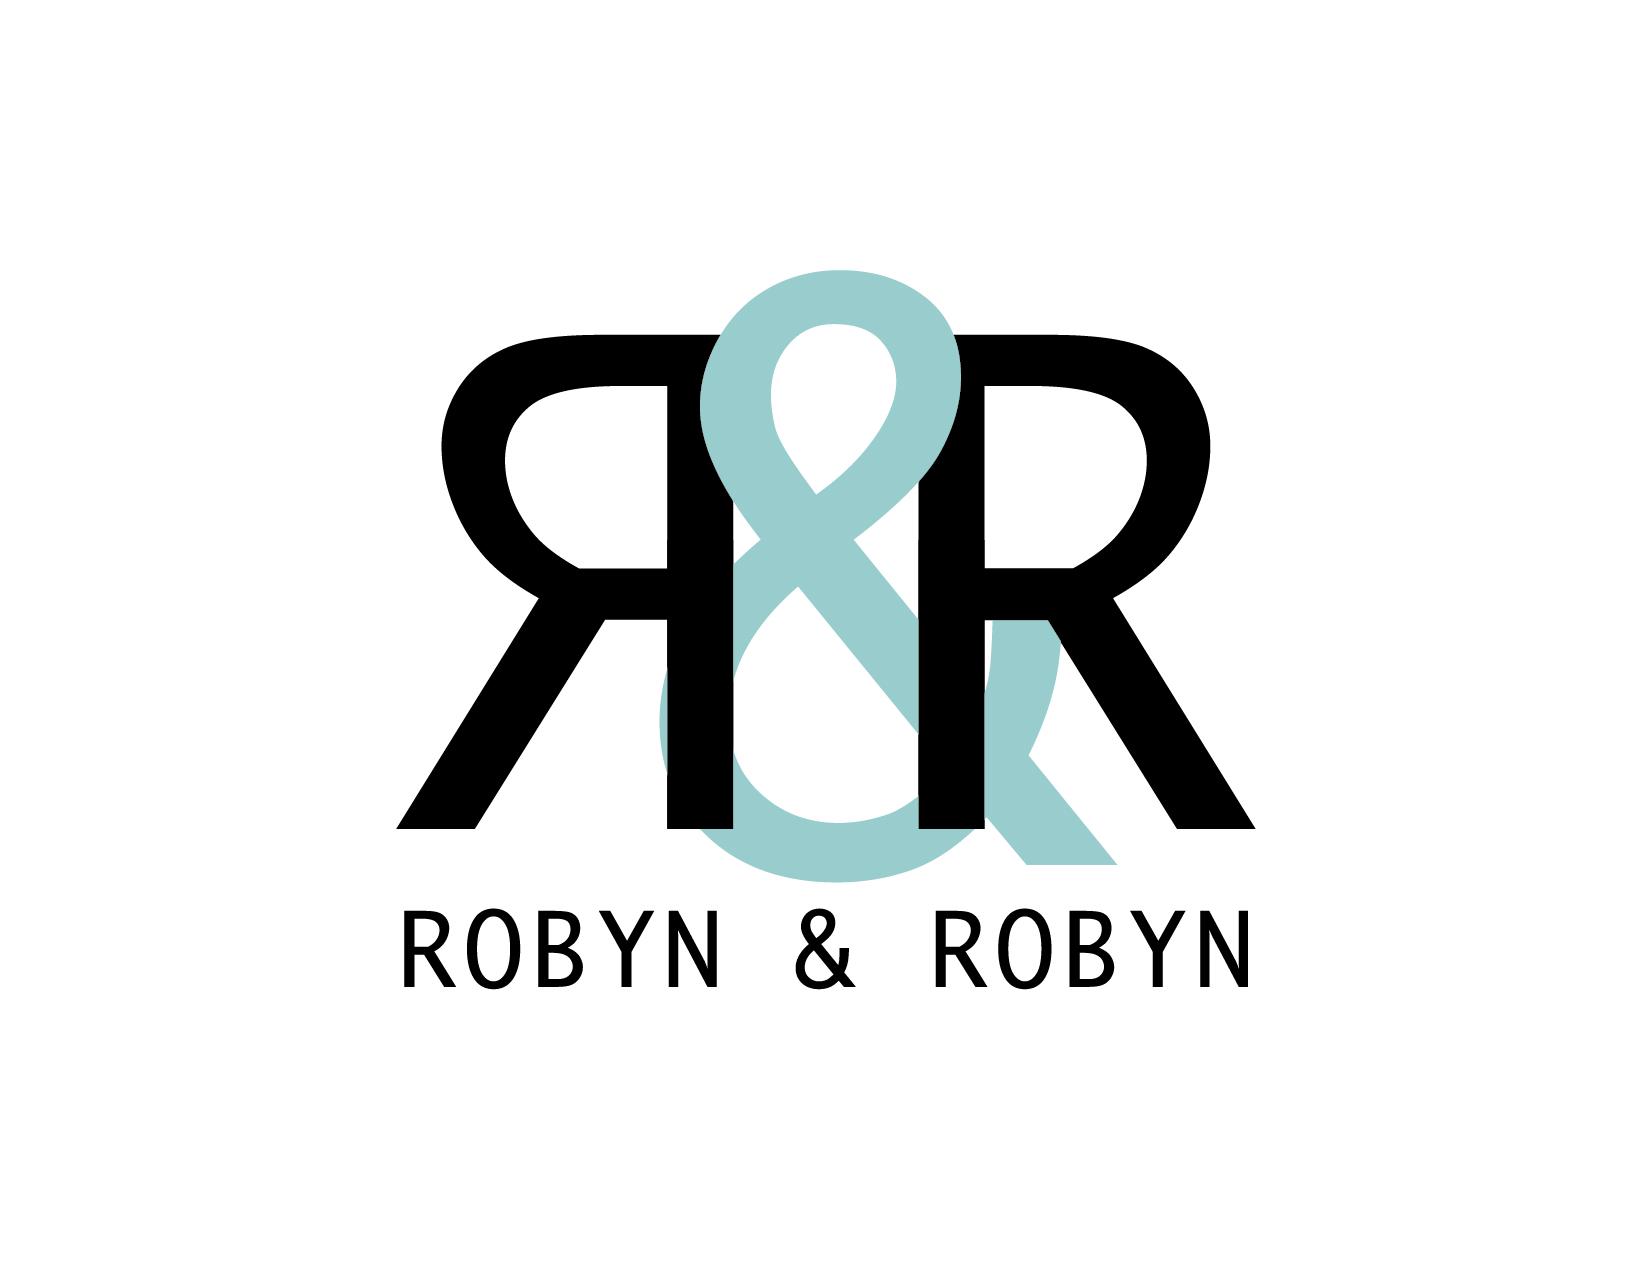 Robyn & Robyn profile on Qualified.One